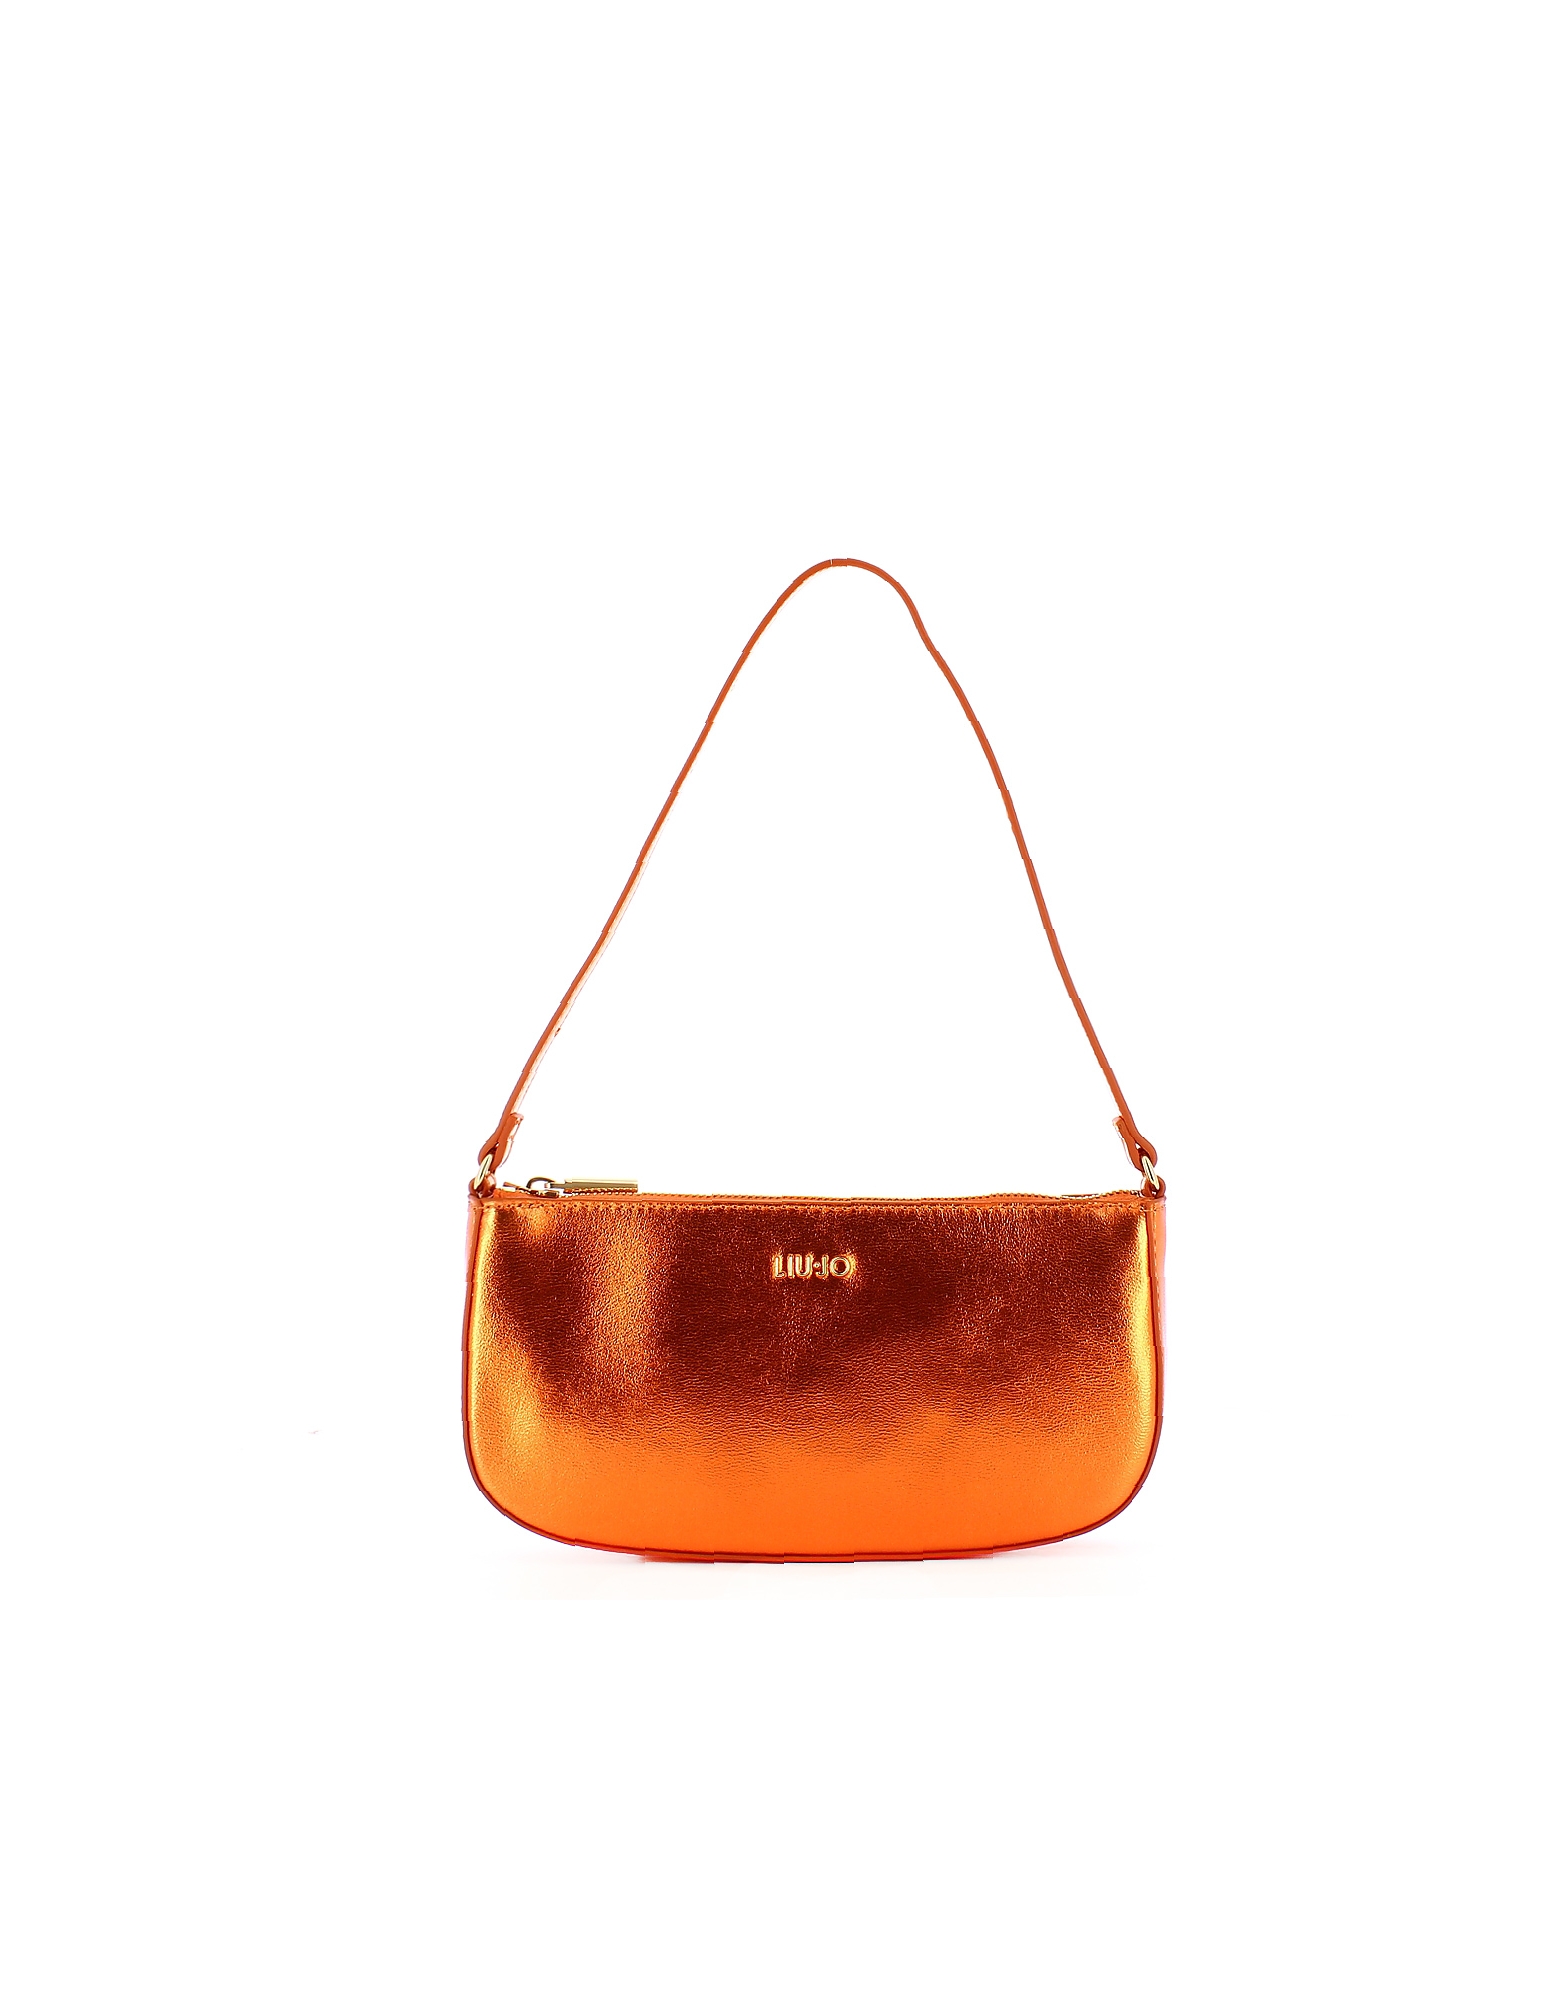 Liu •jo Designer Handbags Women's Orange Bag